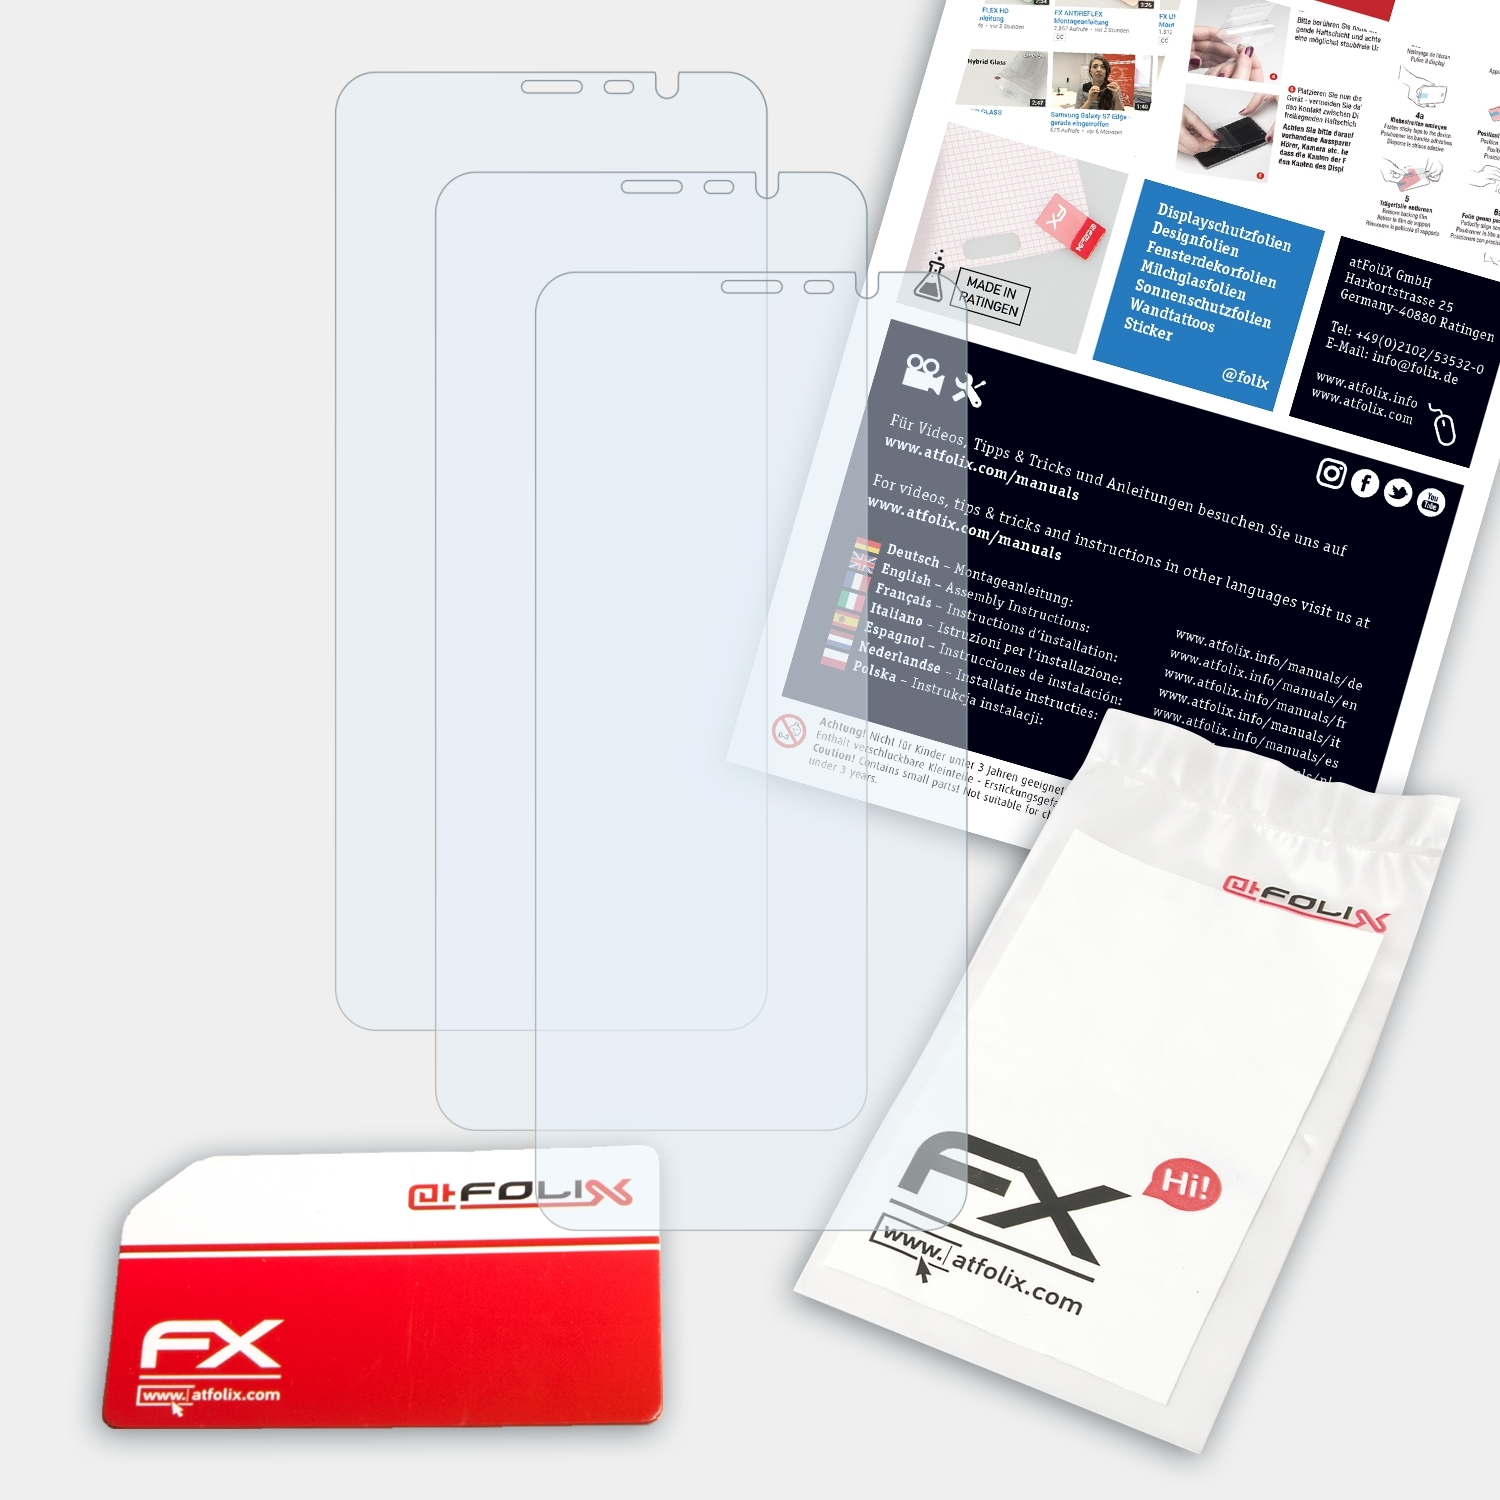 ATFOLIX 3x FX-Clear Displayschutz(für Infinity Hisense H11)